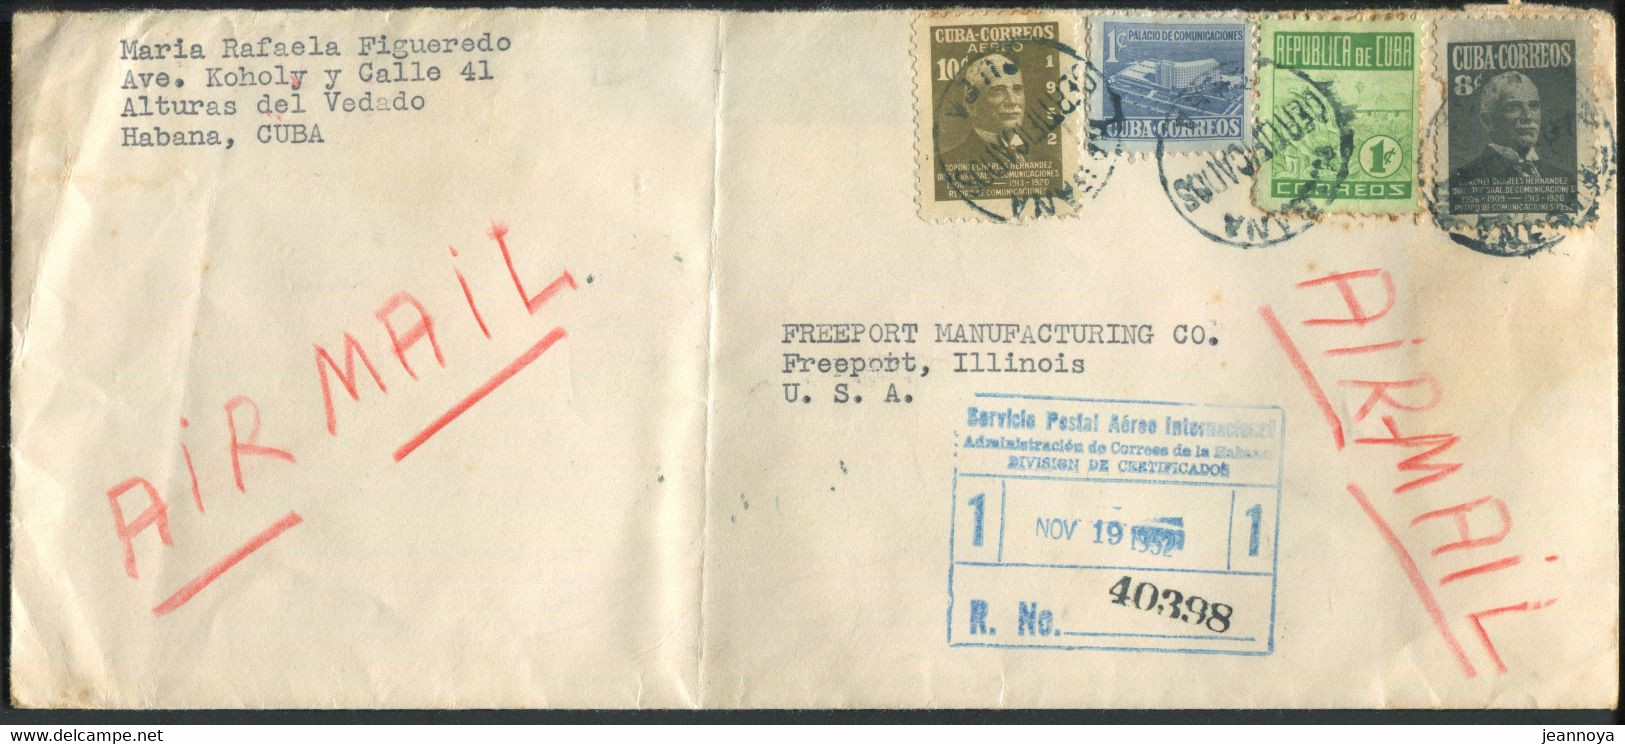 SOUDAN - N° 330A + 353 + 370 + PA 64 / LR AVION DE LA HAVANE LE 19/11/1952 POUR USA - TB - Lettres & Documents